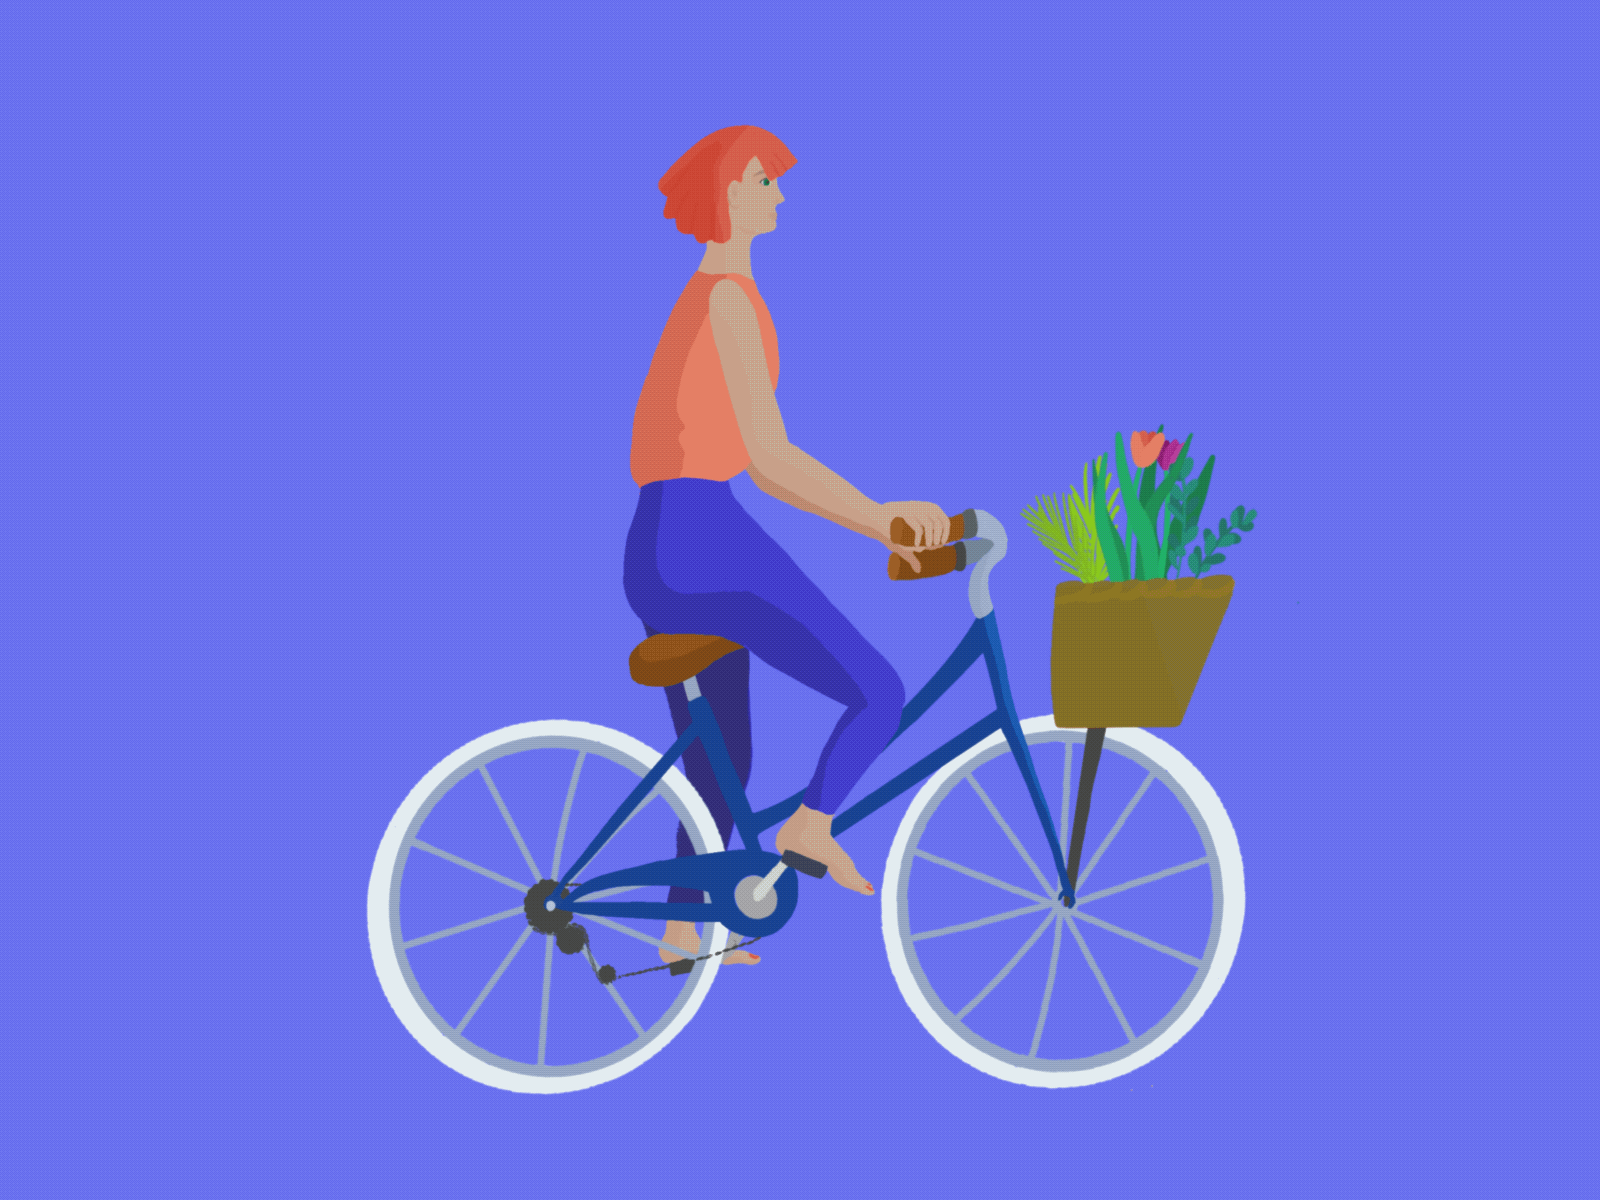 Bike Animation animated gif animated illustration animation applepencil applepencilillustration bicycle bike digitalart illustration illustration digital internationalwomensday procreate procreate animation women